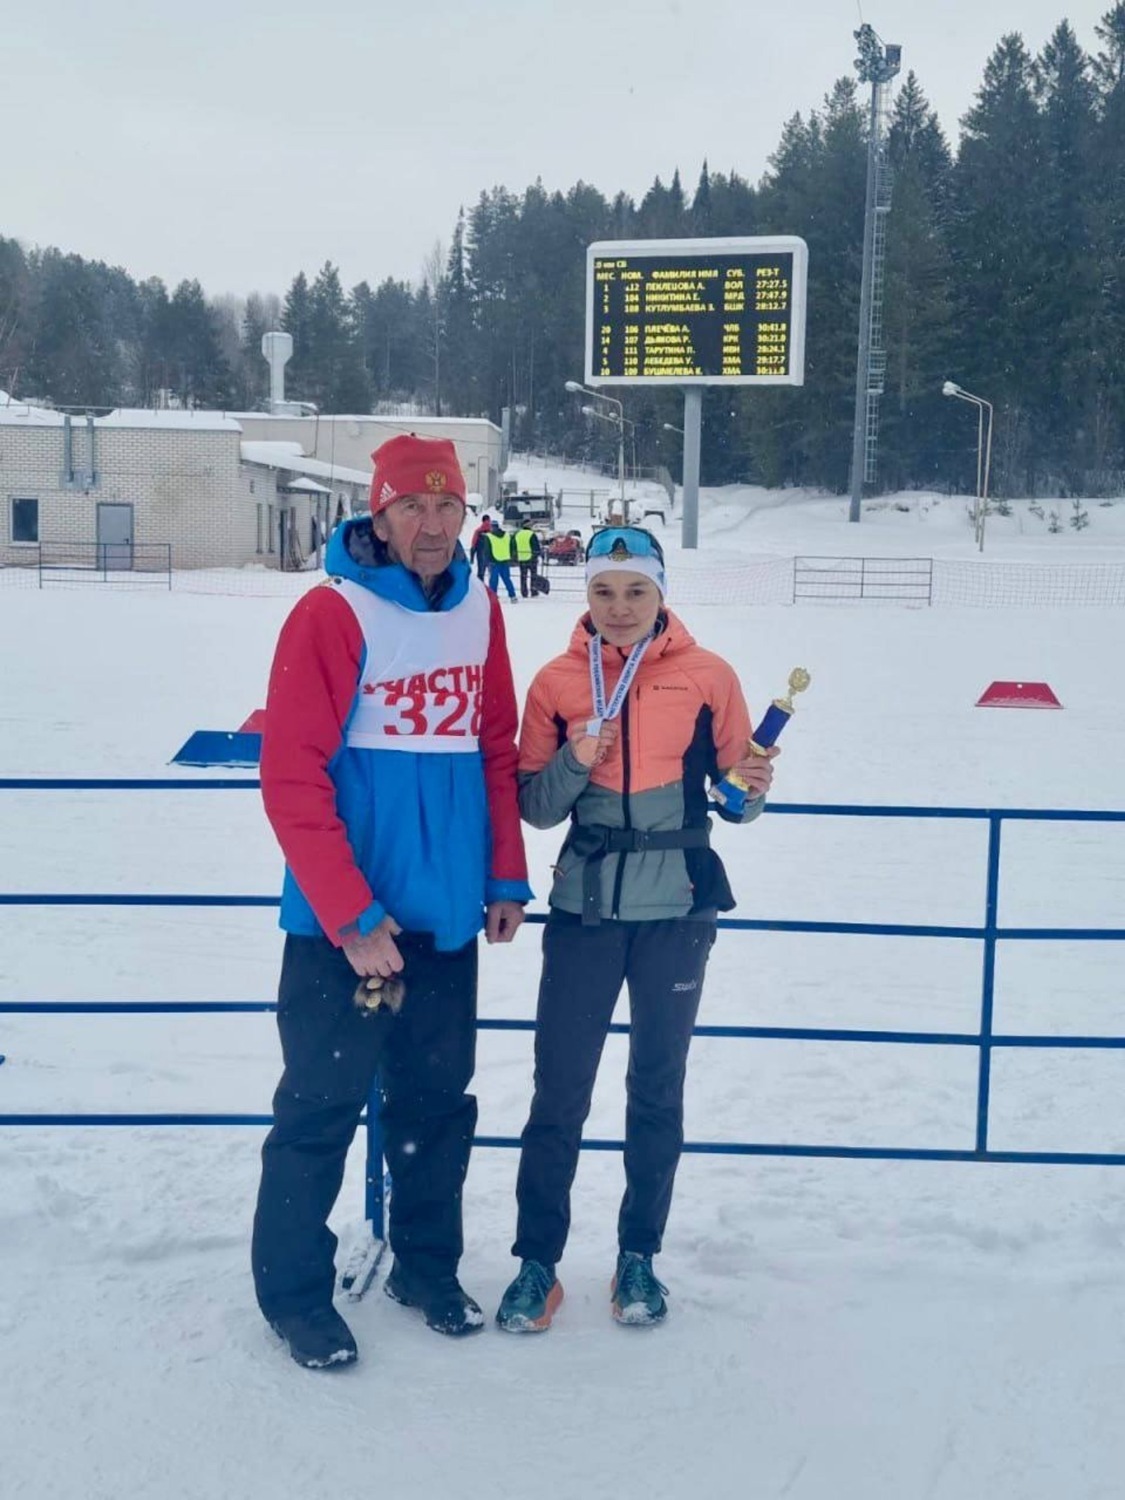 министерство спорта РБ  Зарина Кутлумбаева получила бронзовую медаль на первенстве России по лыжным гонкам